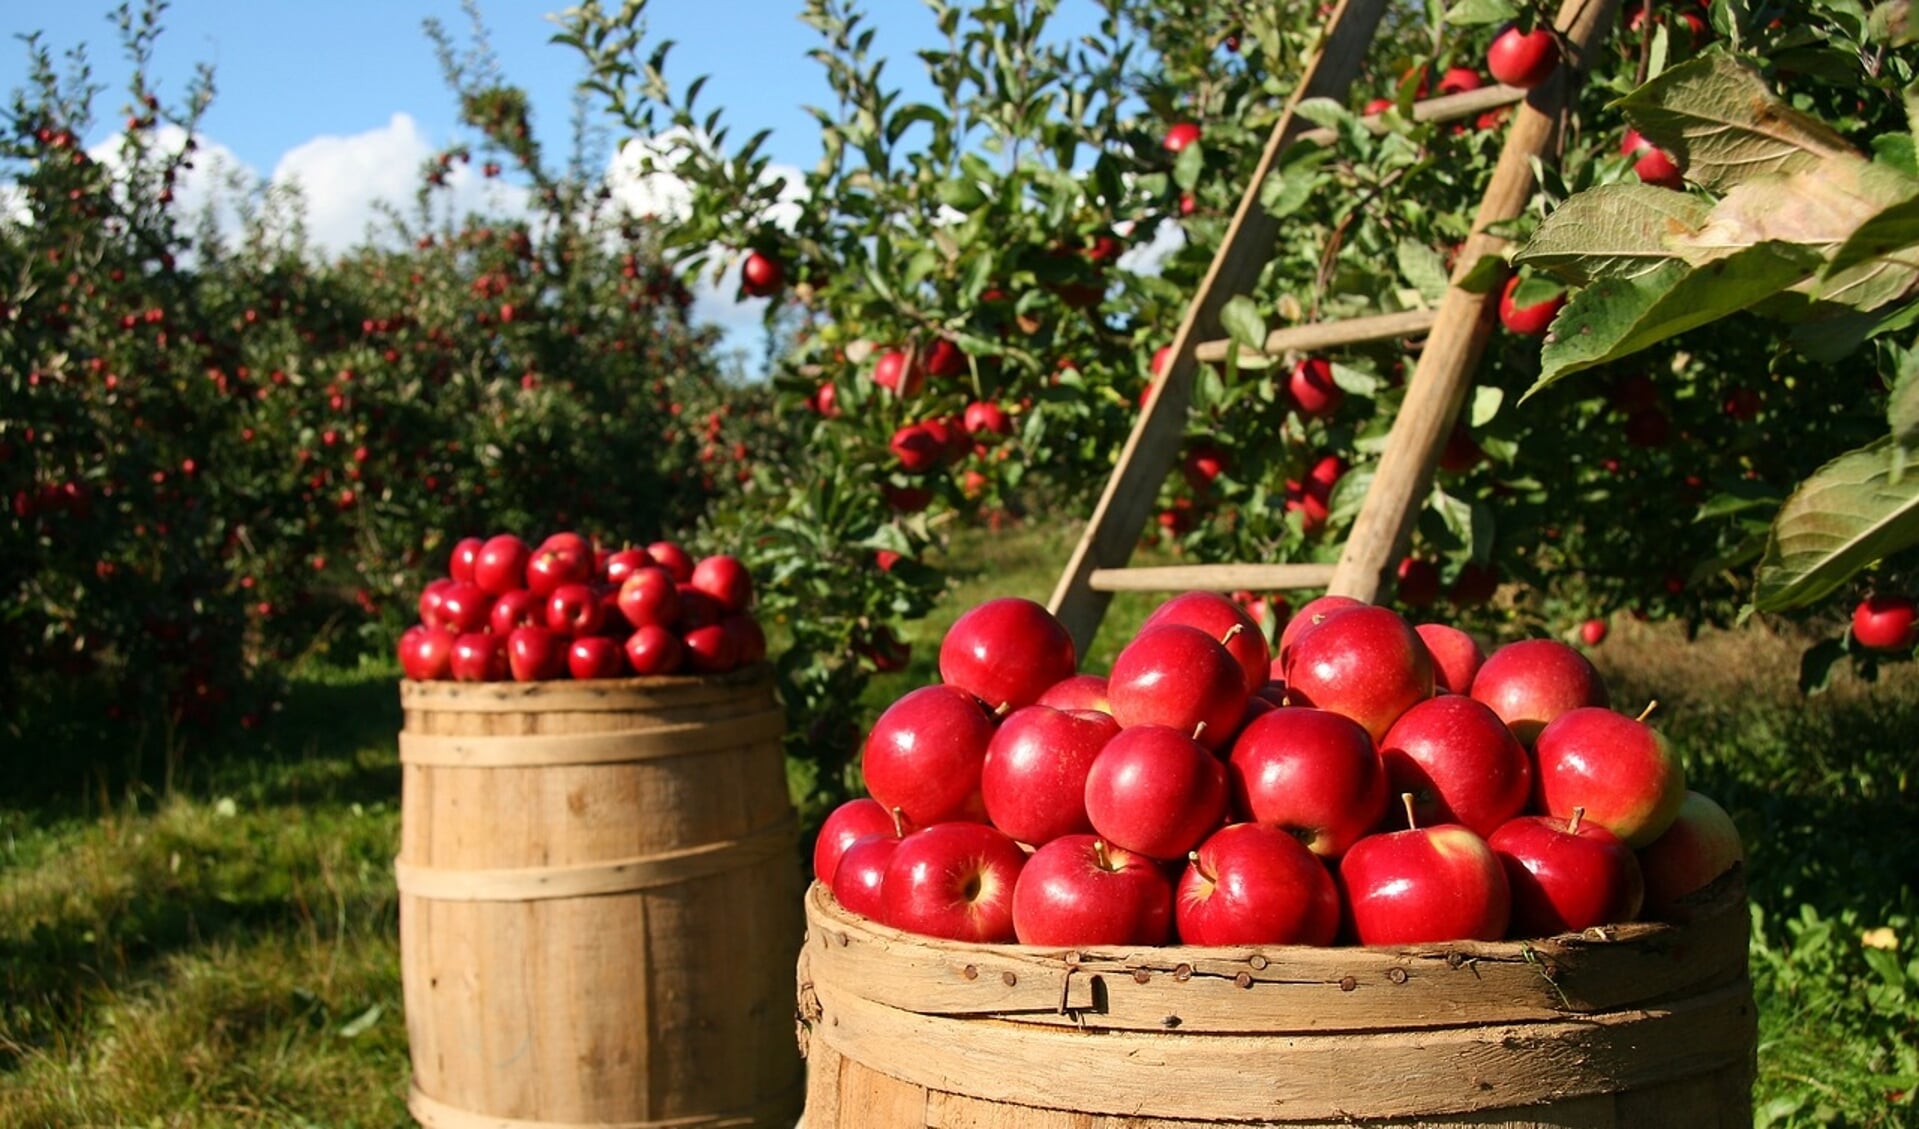 Appels spelen een grote rol tijdens het Oogstfeest. Zo komt er een grote sap-pers die ter plaatse appels perst. 